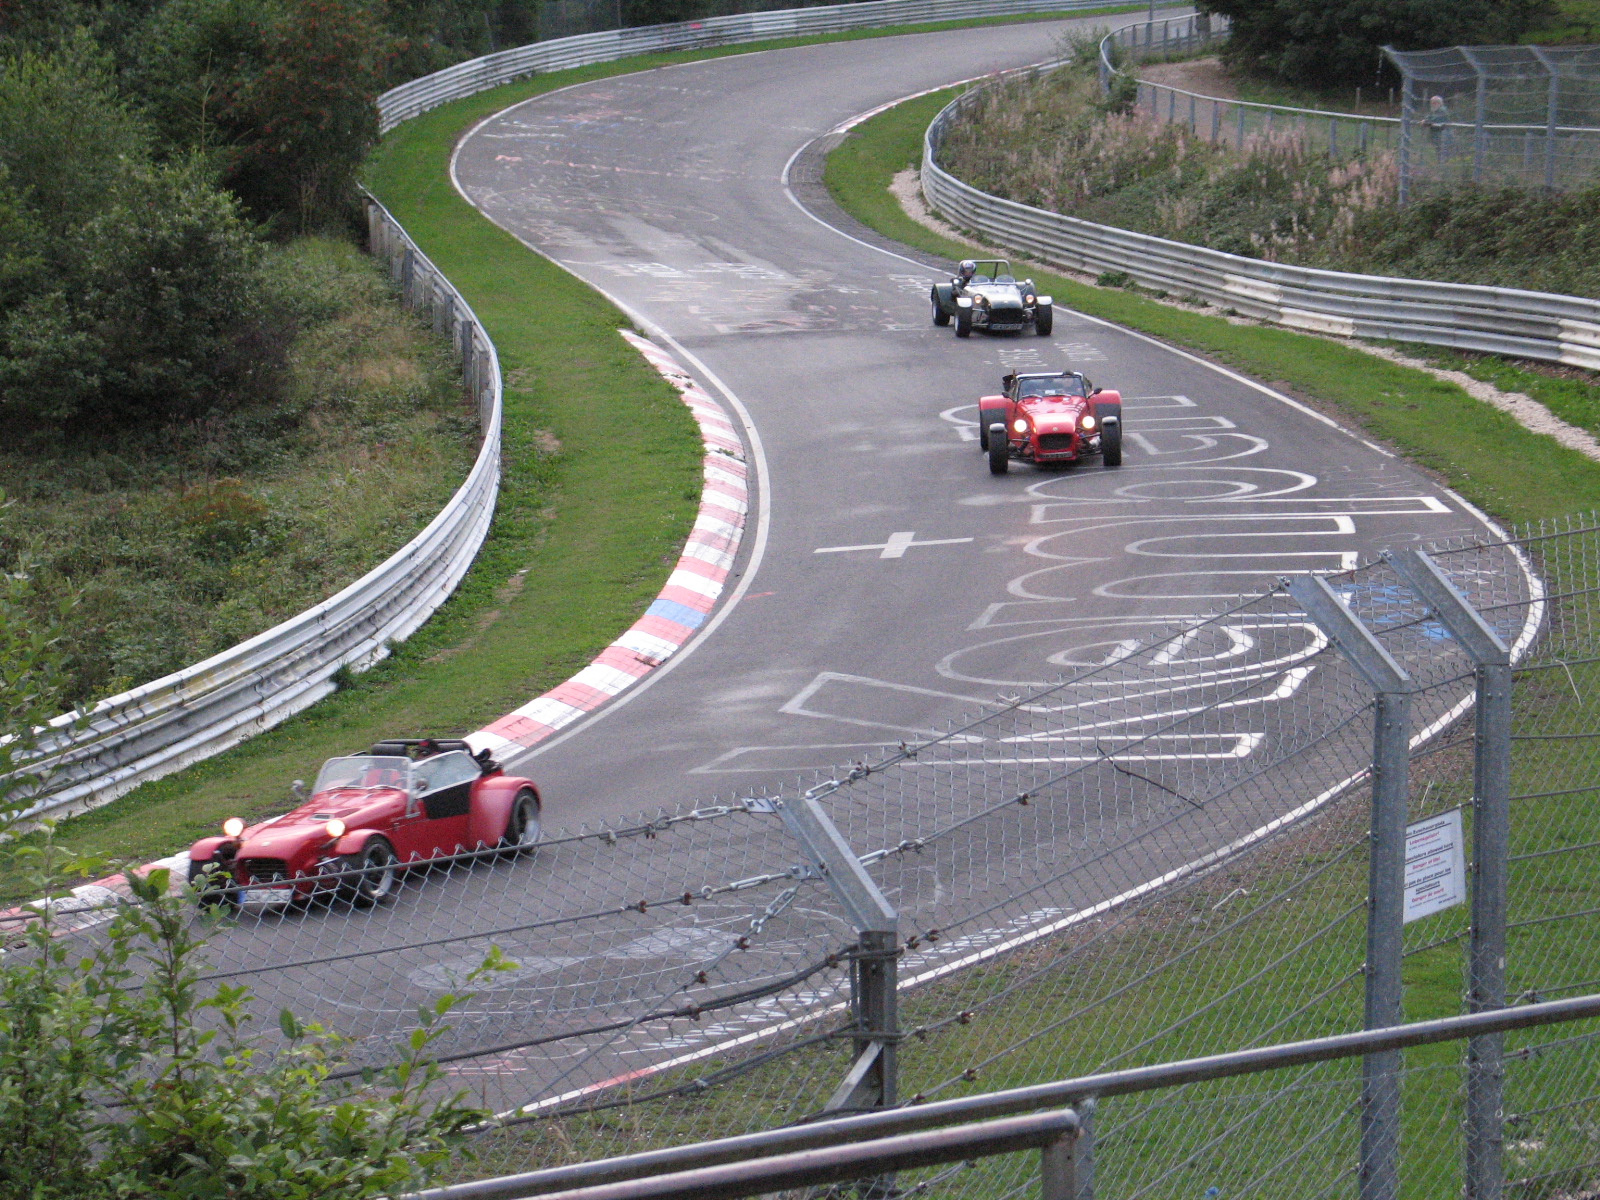 Le circuit Nürburgring a un statut de route à règles particulières